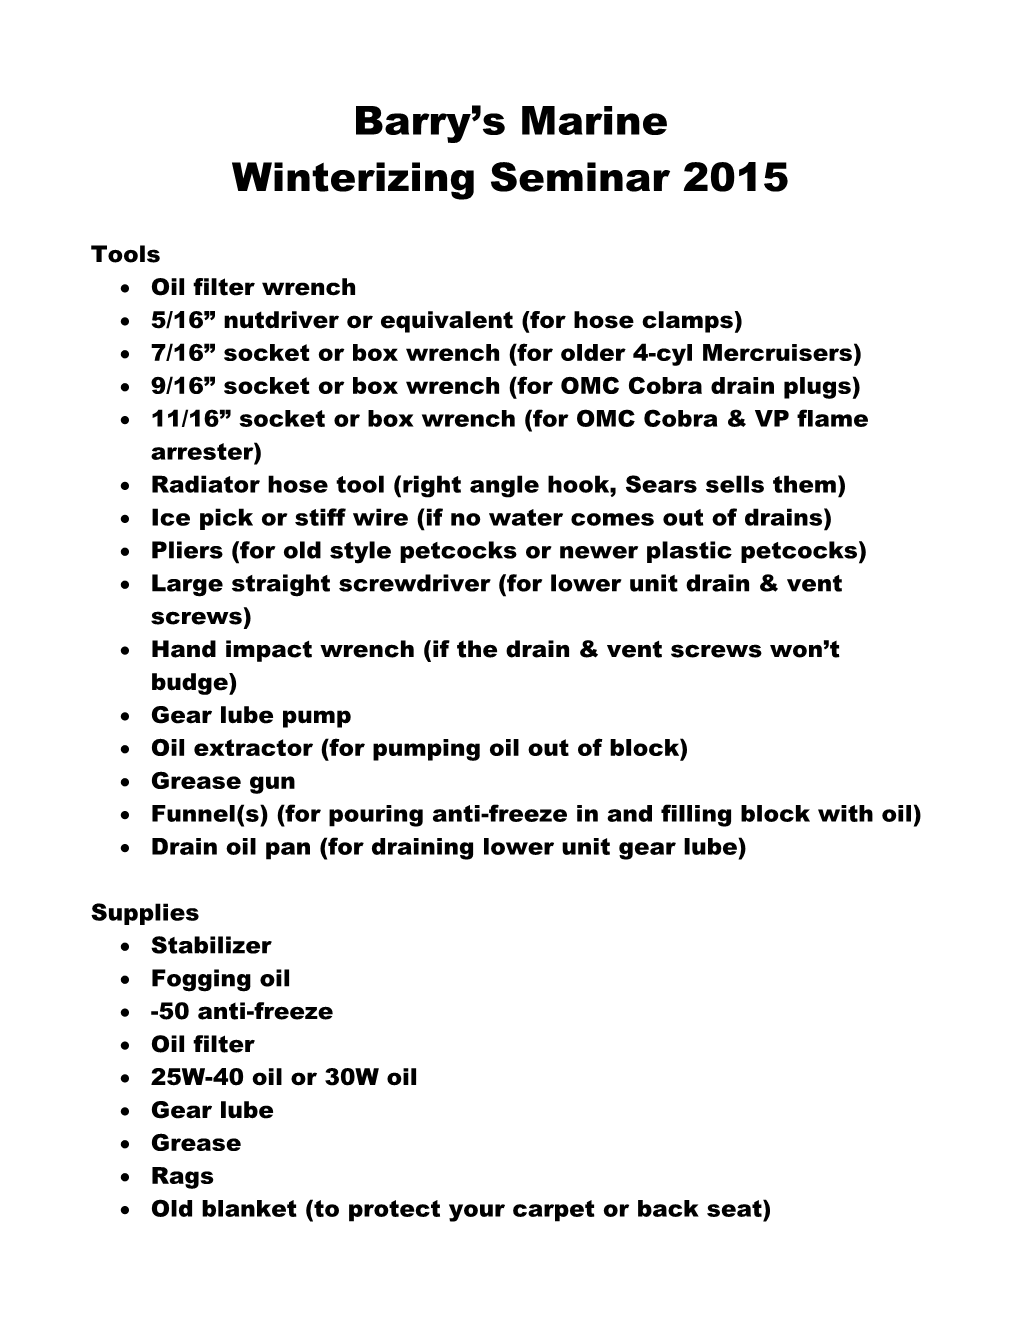 Winterizing Seminar 2015